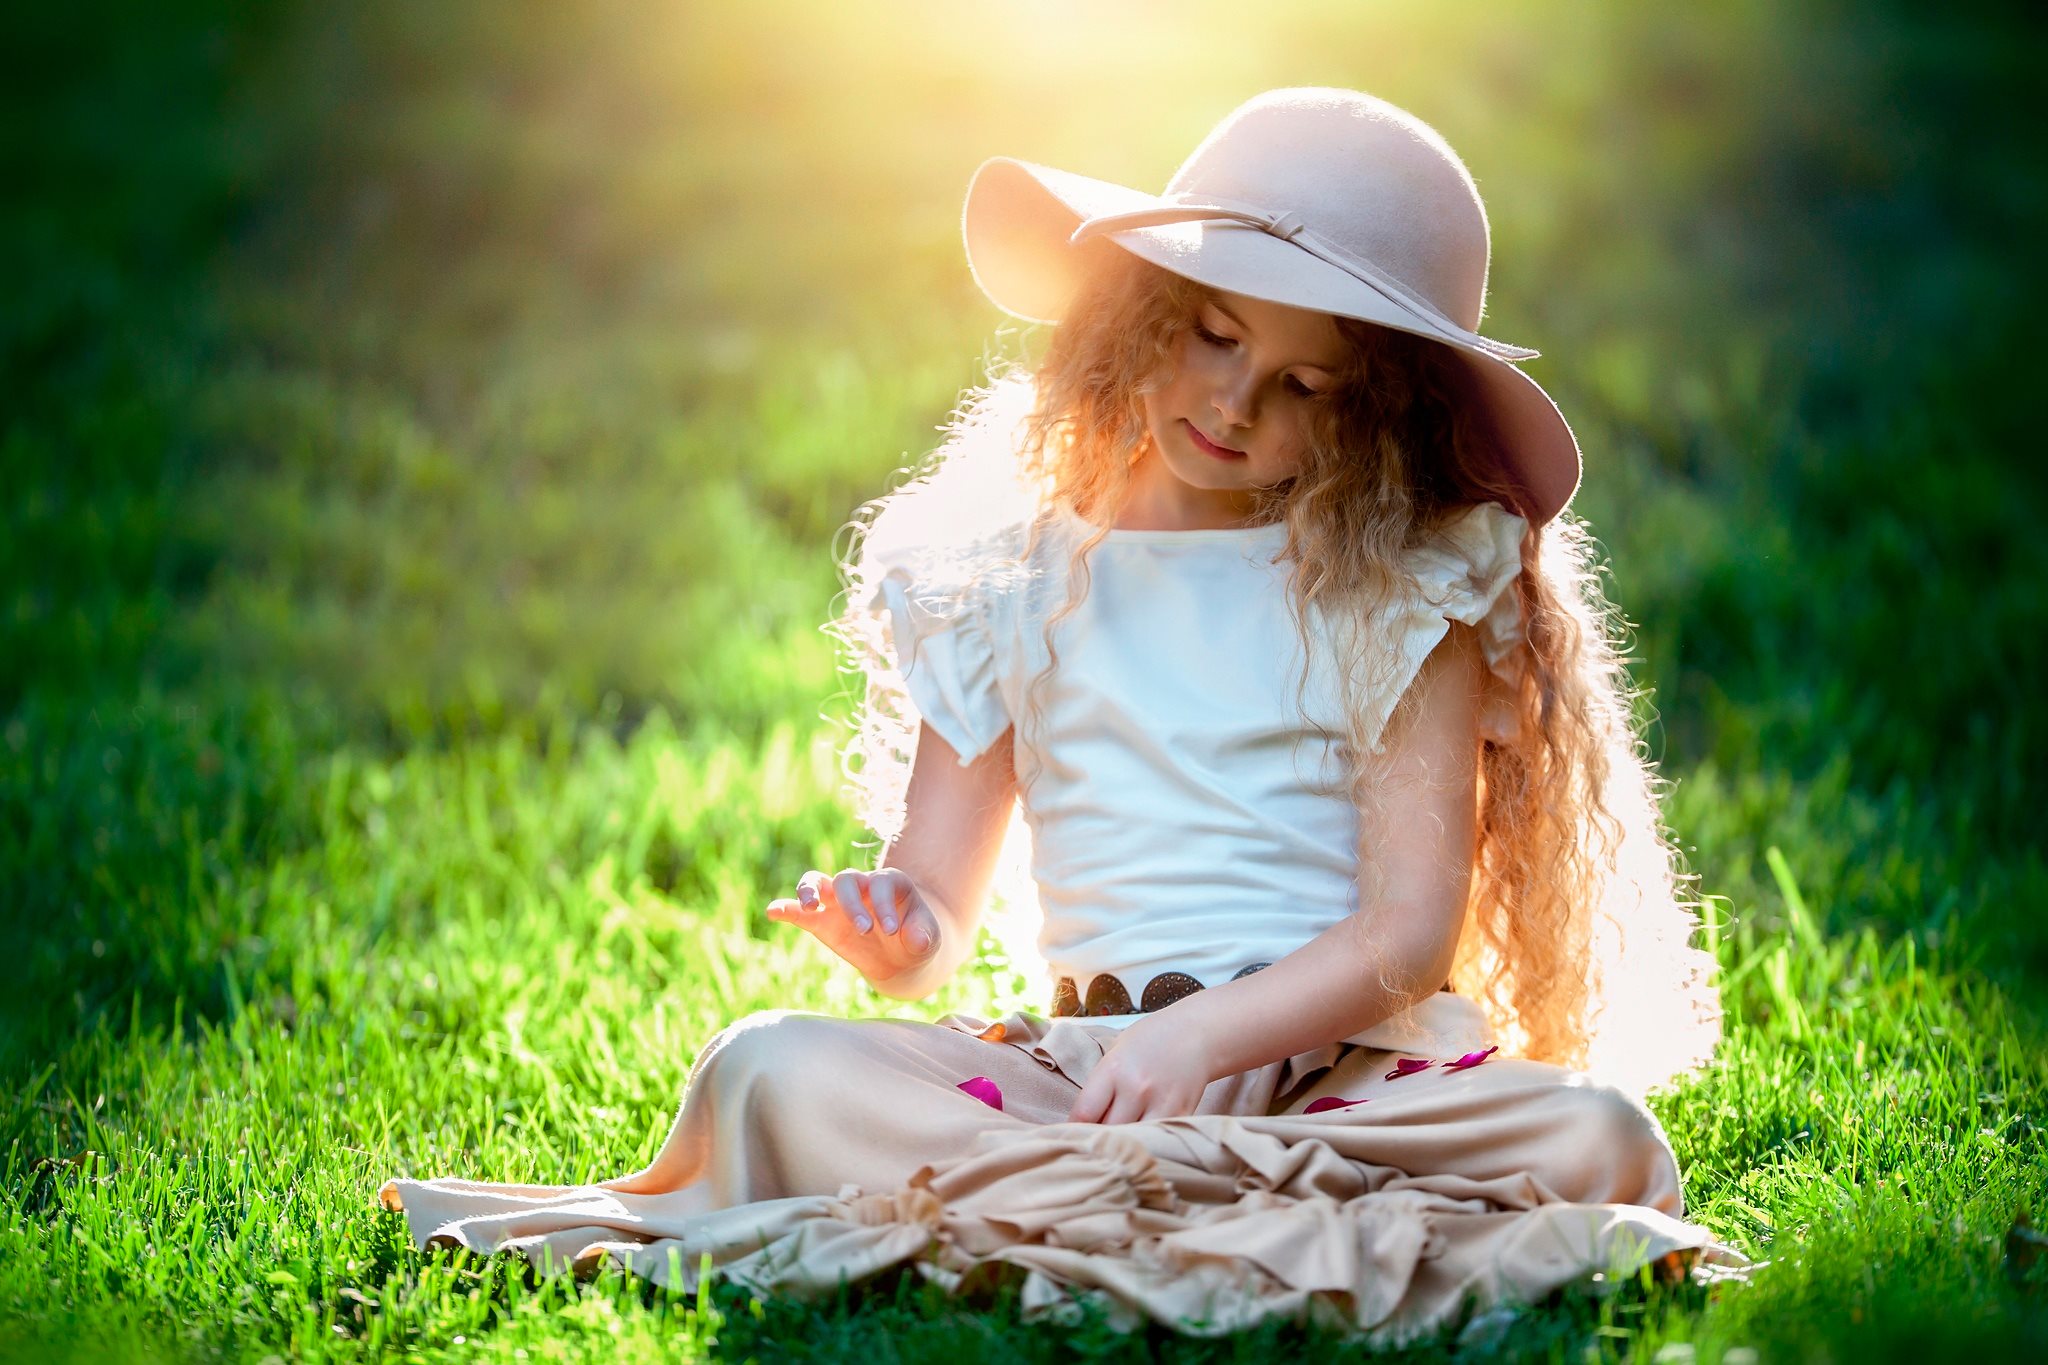 Картинка девочка настоящая. Шляпки для девочек. Девочка в шляпе. Детская фотосессия на природе летом. Девочка на природе.